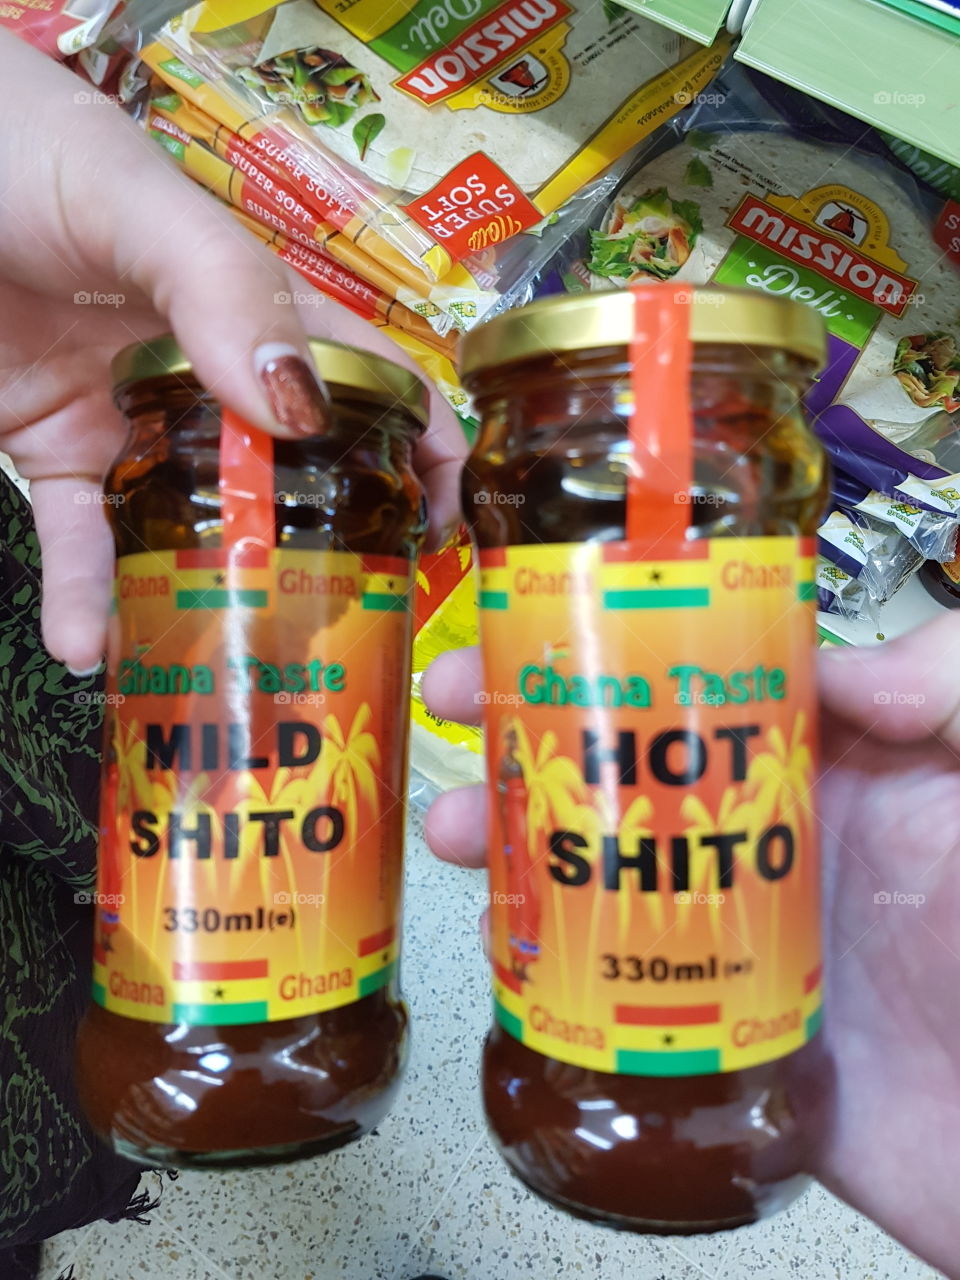 Hot shito mild shito